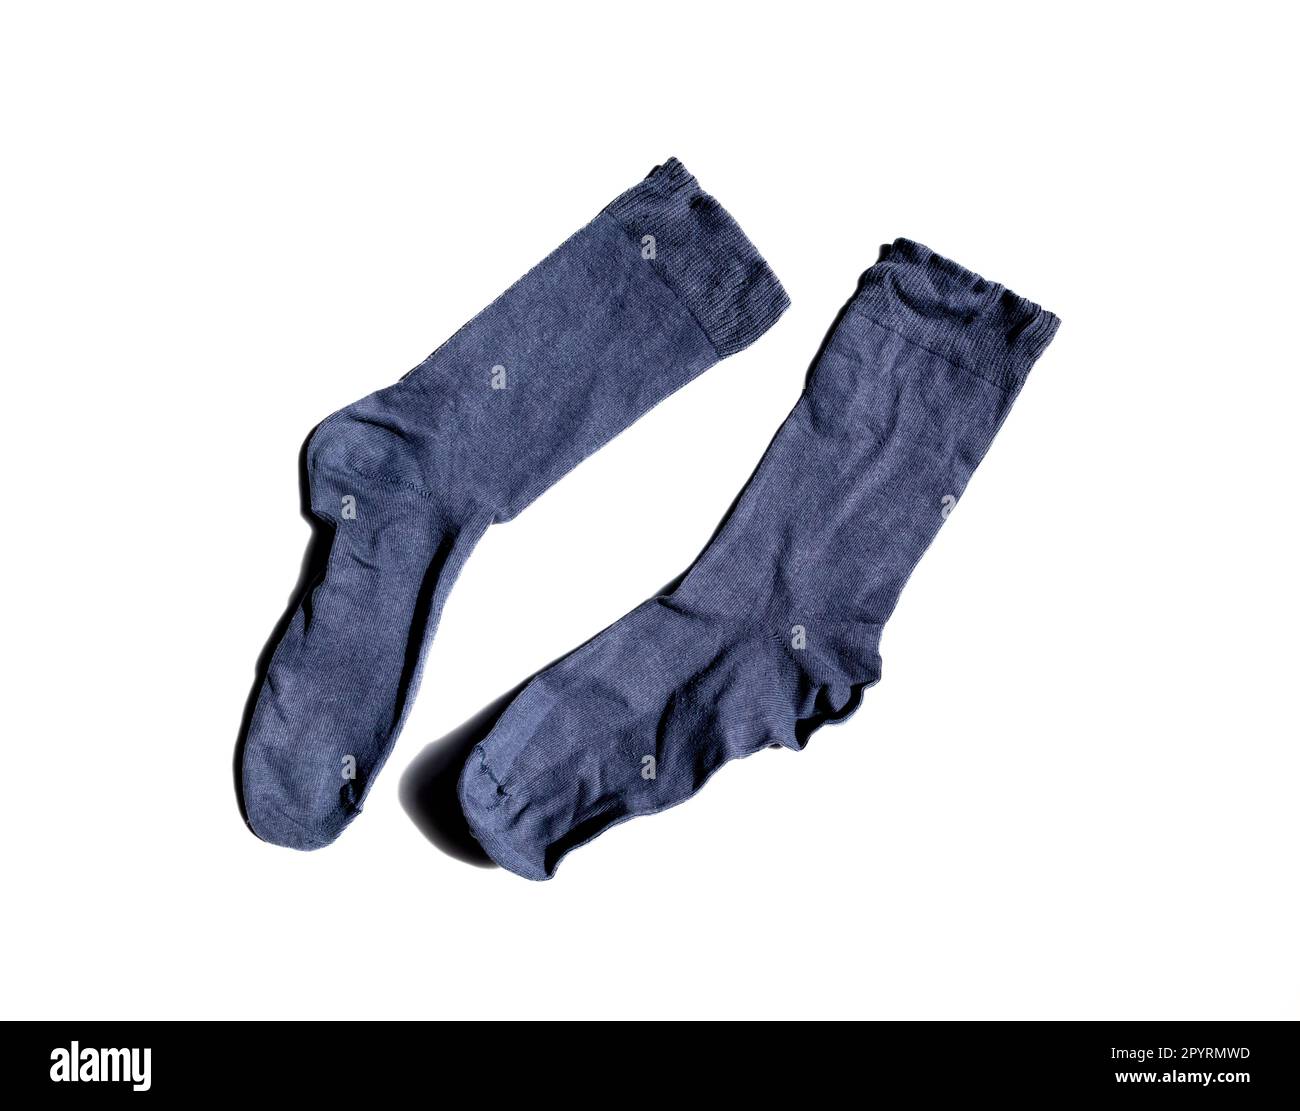 Crumpled socks isolated on white background Stock Photo - Alamy